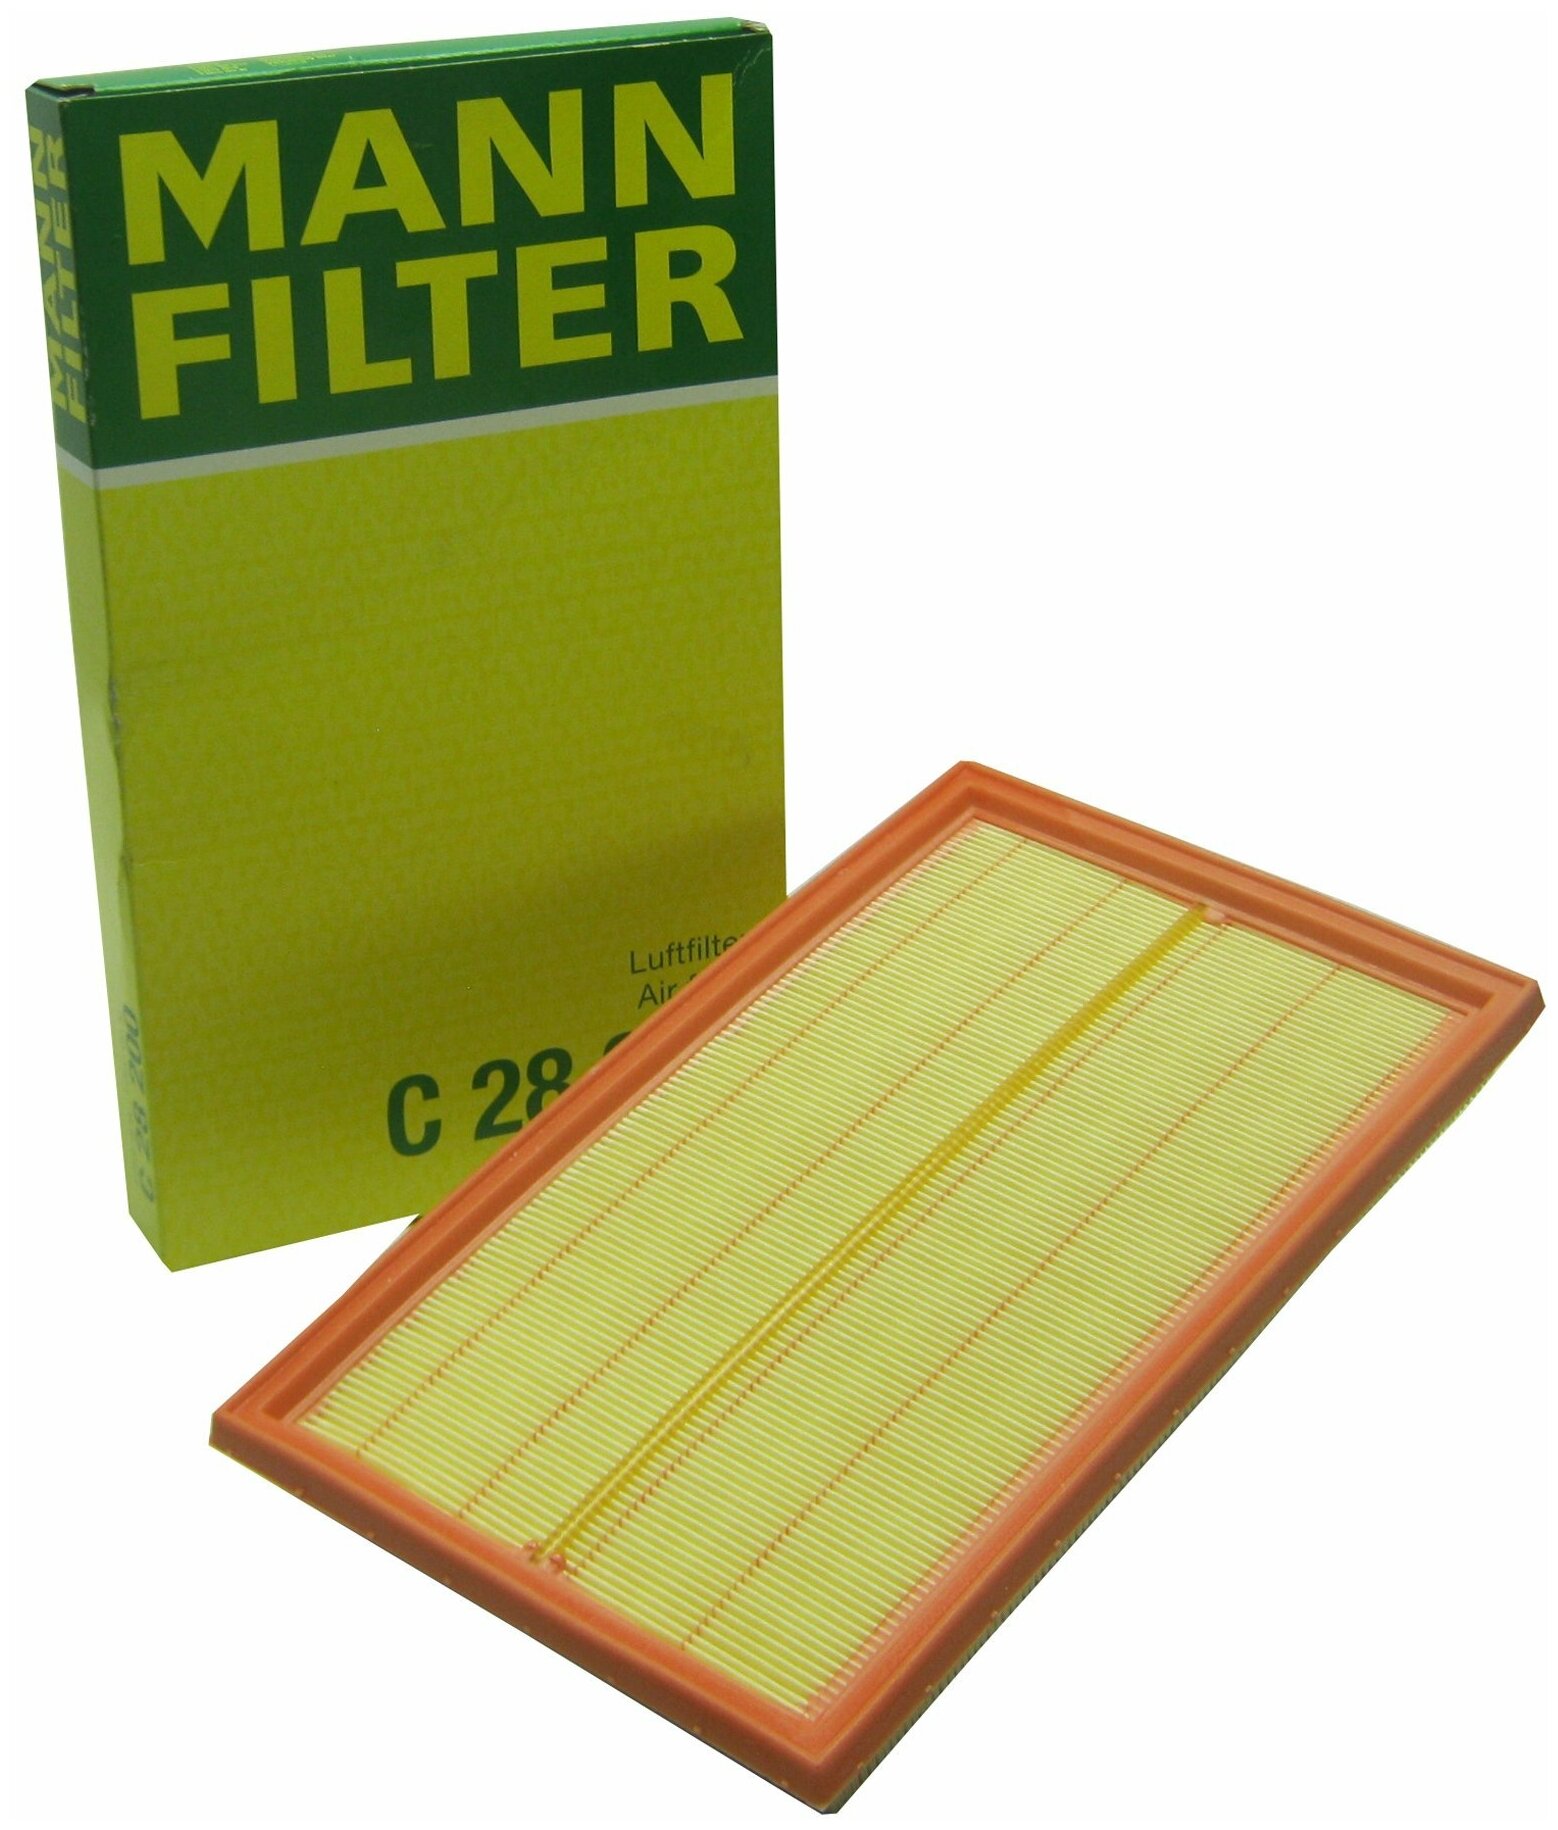  Mann-Filter C28200